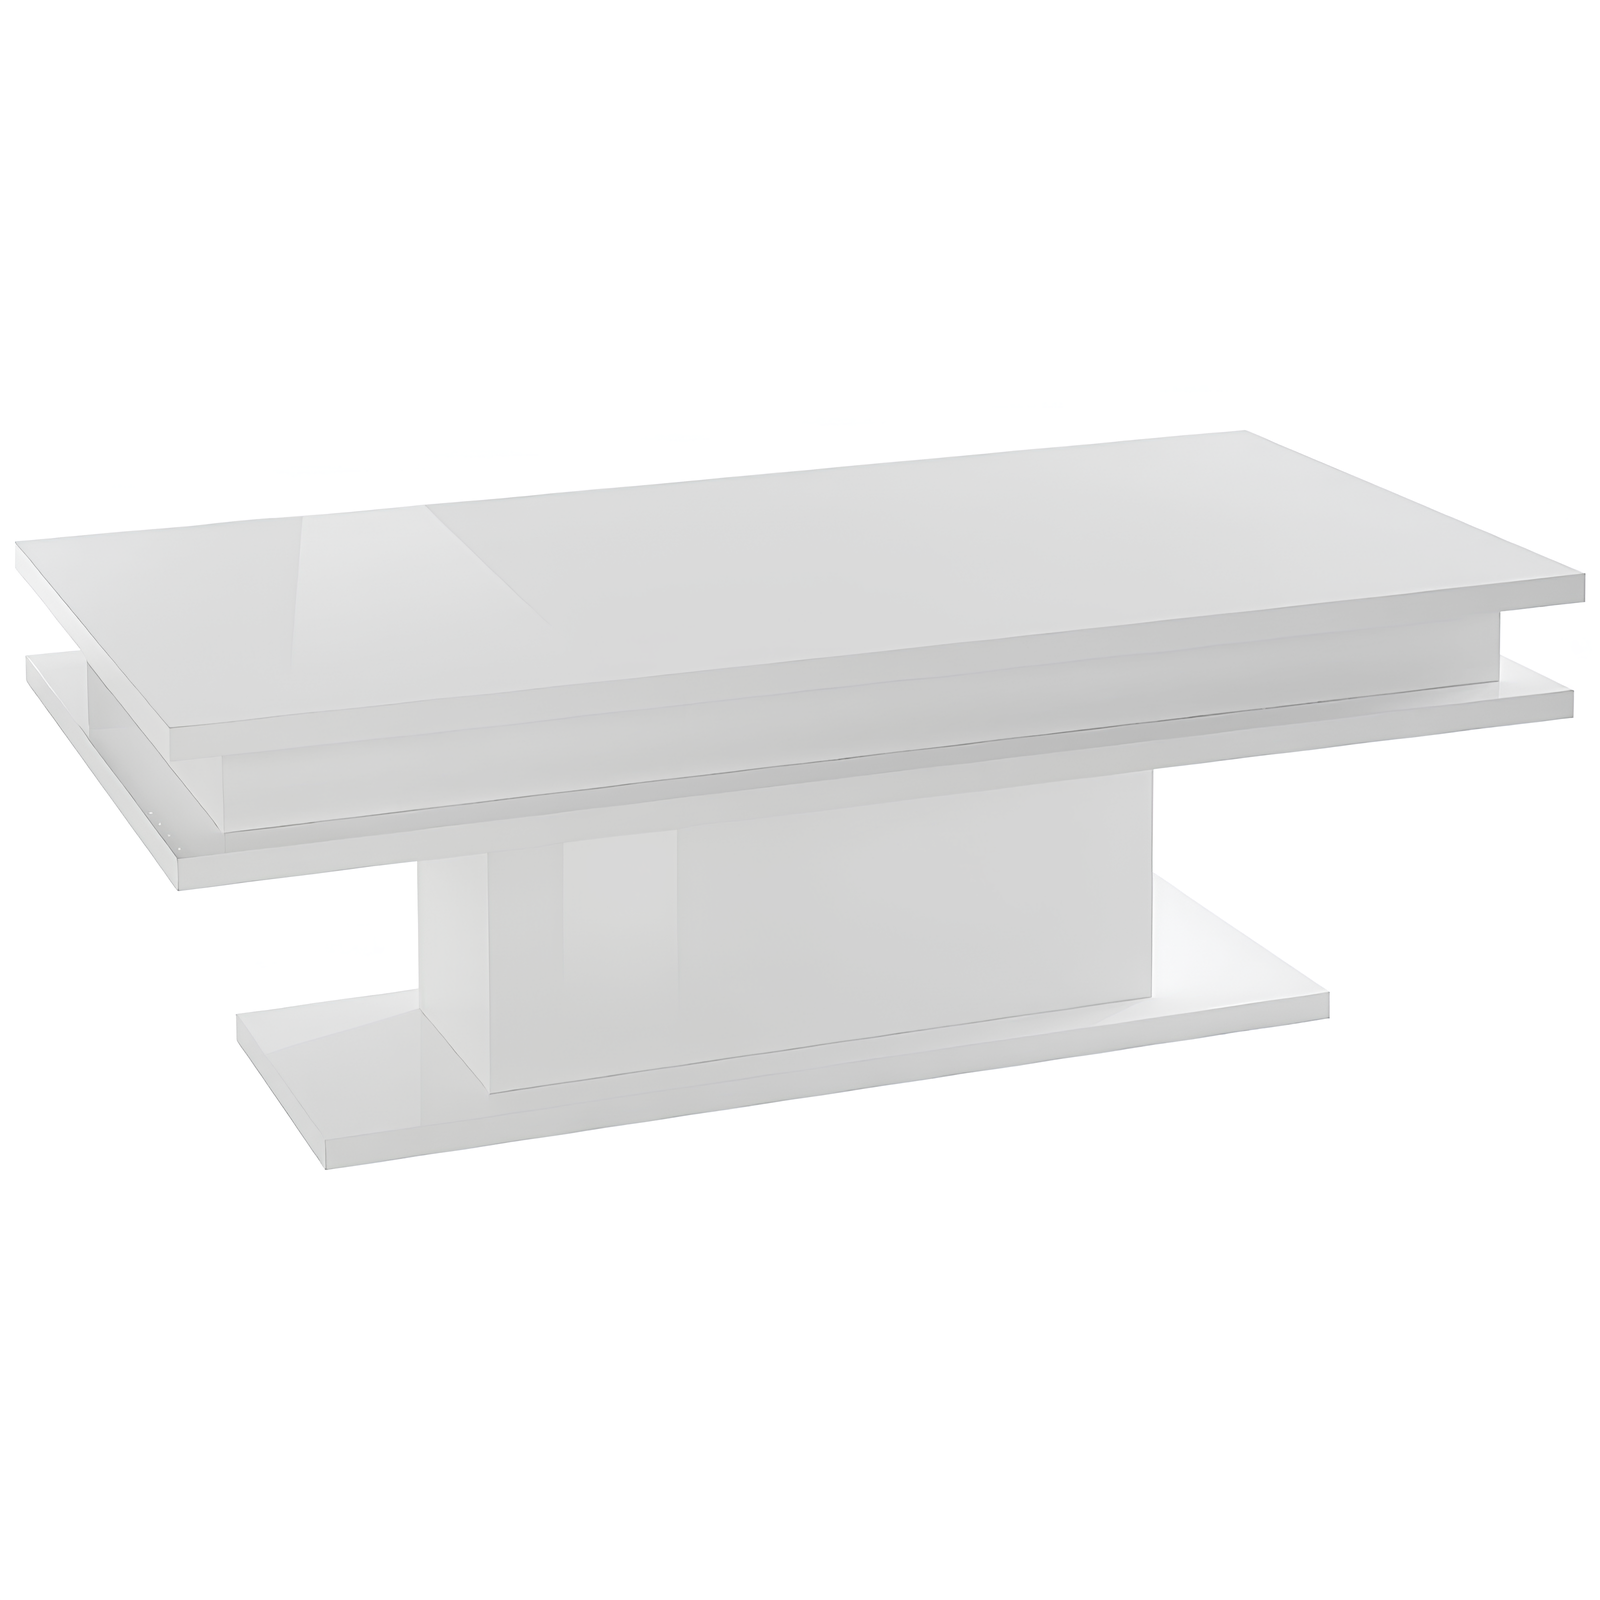 Tavolino da salotto moderno bianco lucido rettangolare in legno - Limmi